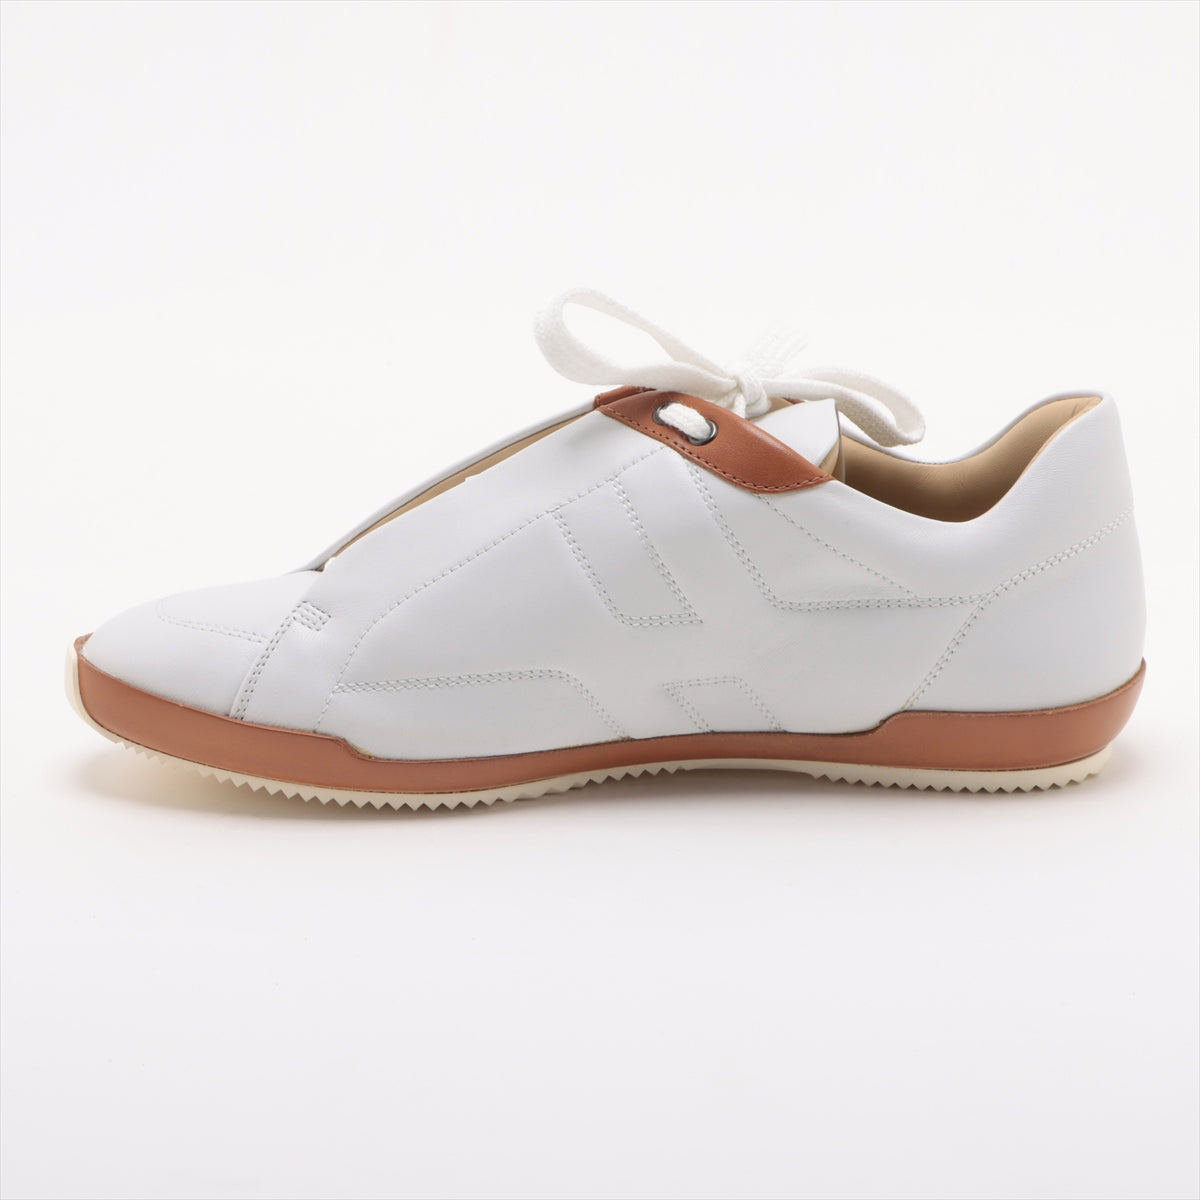 Hermès Leather Sneakers 37 1/2 Ladies' White x brown